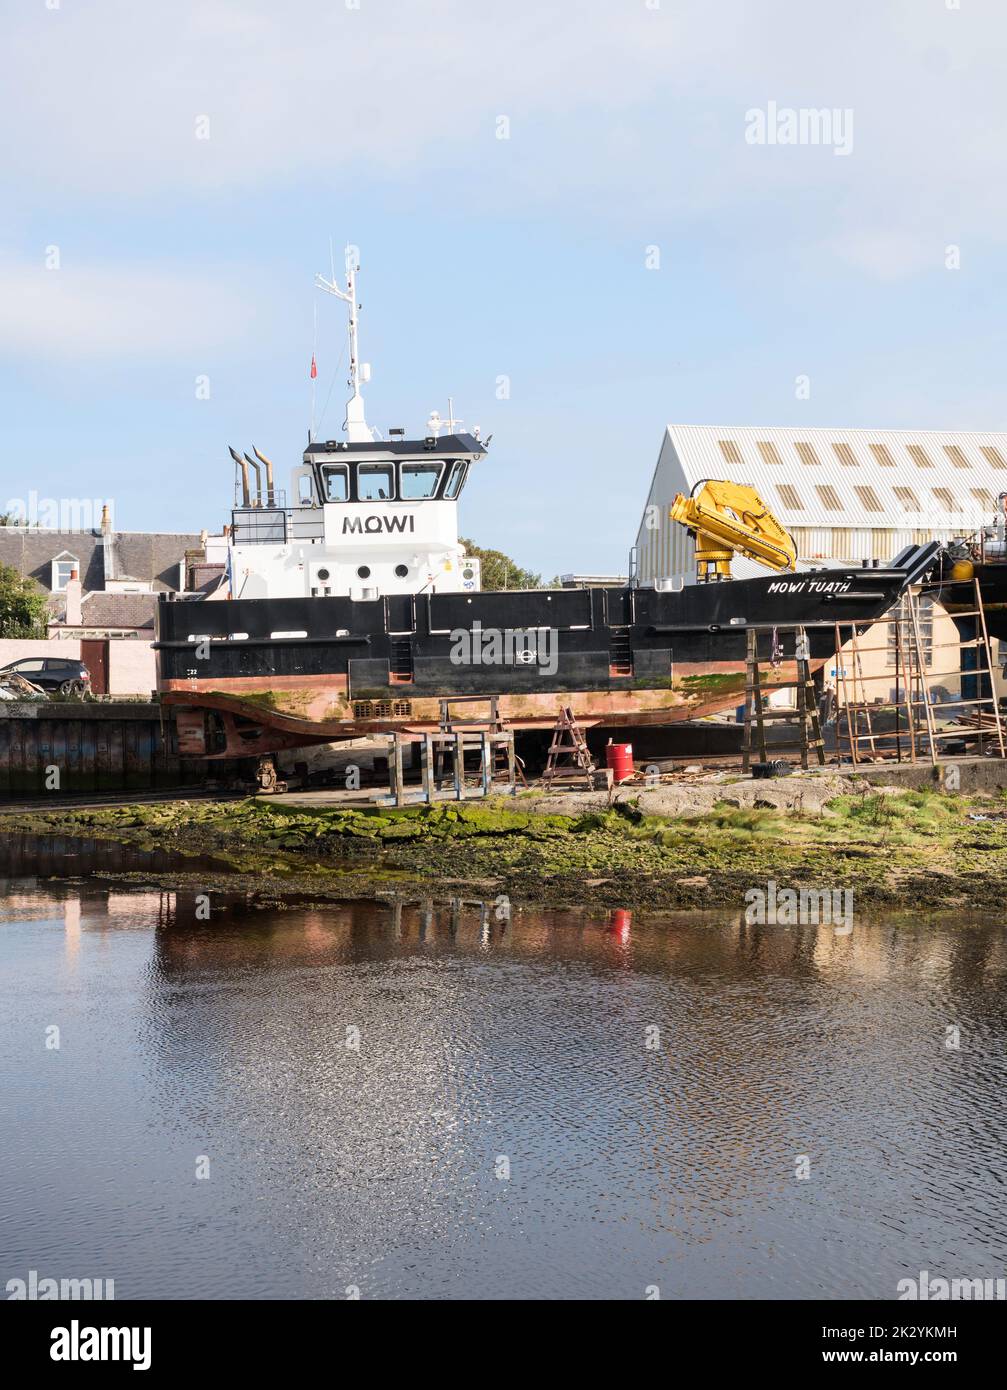 Buque de apoyo para la cría de salmón Mowi Tuath, en la rampa de los ingenieros marinos Alexander Noble & Sons, en Girvan Harbor, South Ayrshire, Escocia, Reino Unido Foto de stock